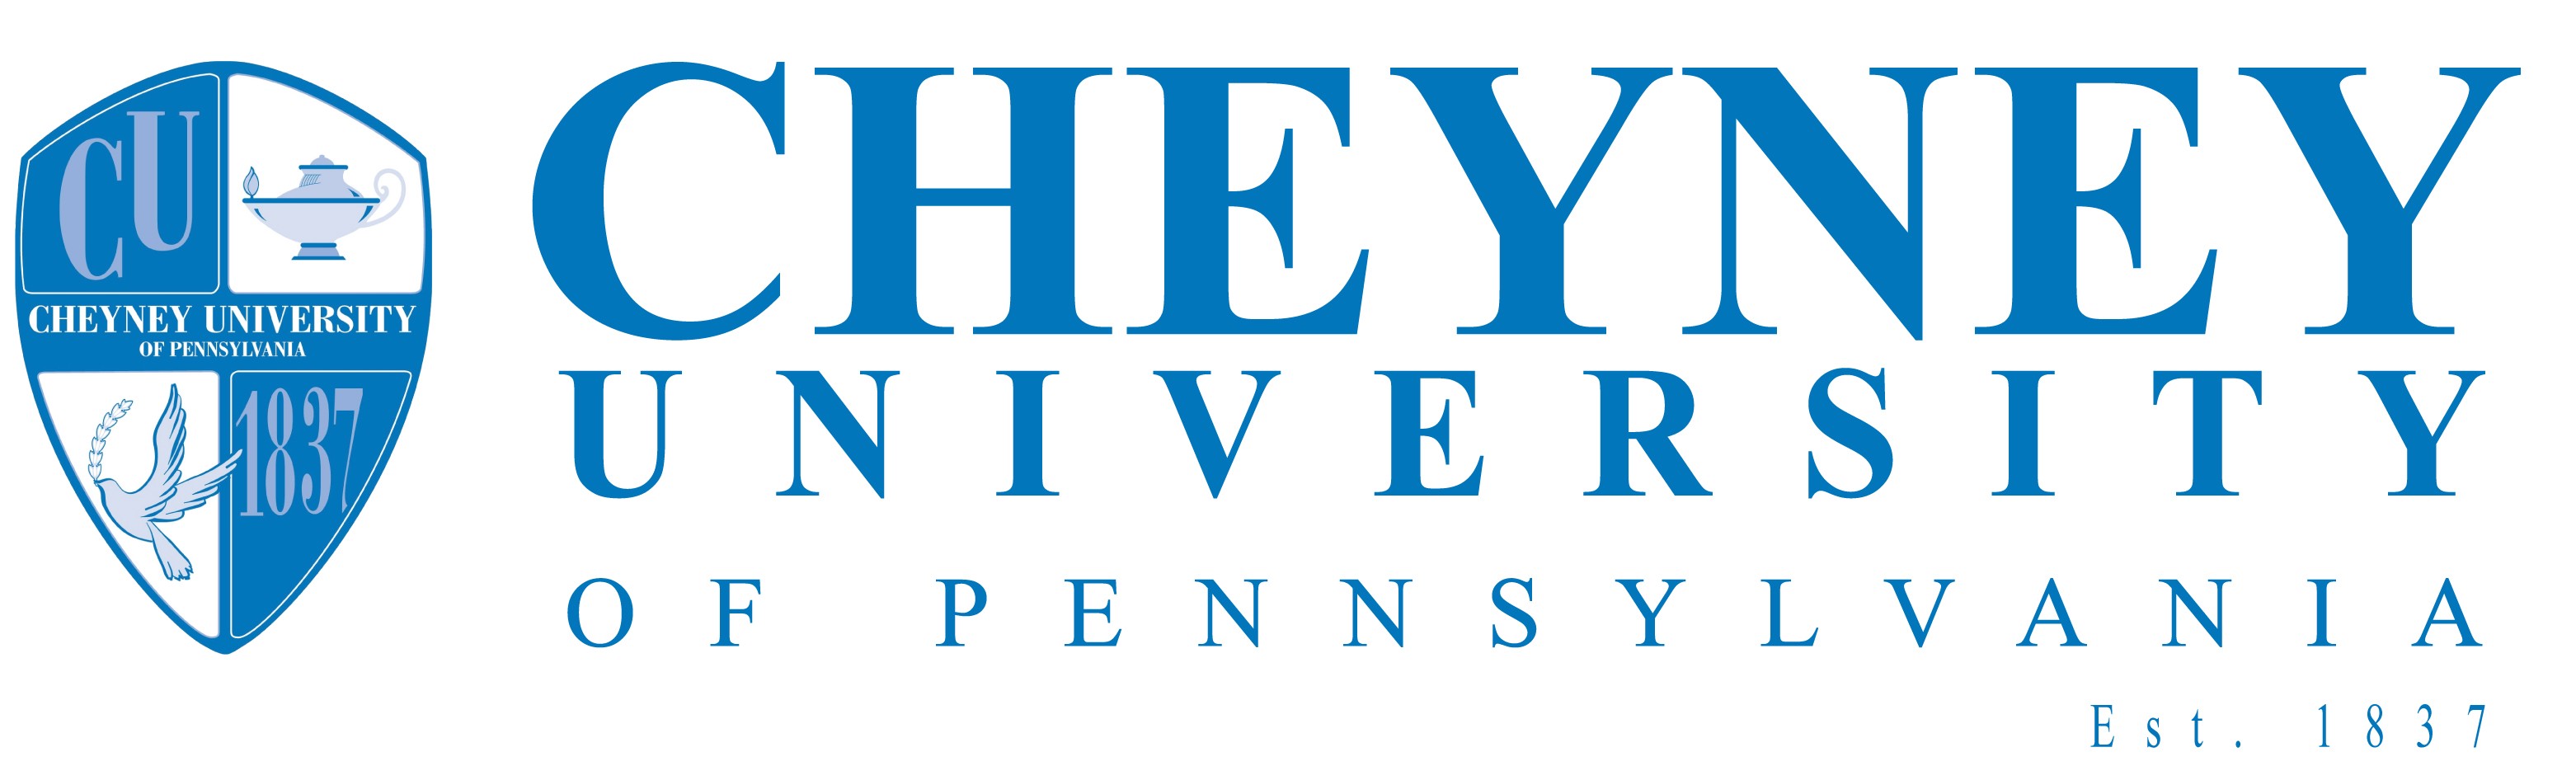 Image result for cheyney university logo